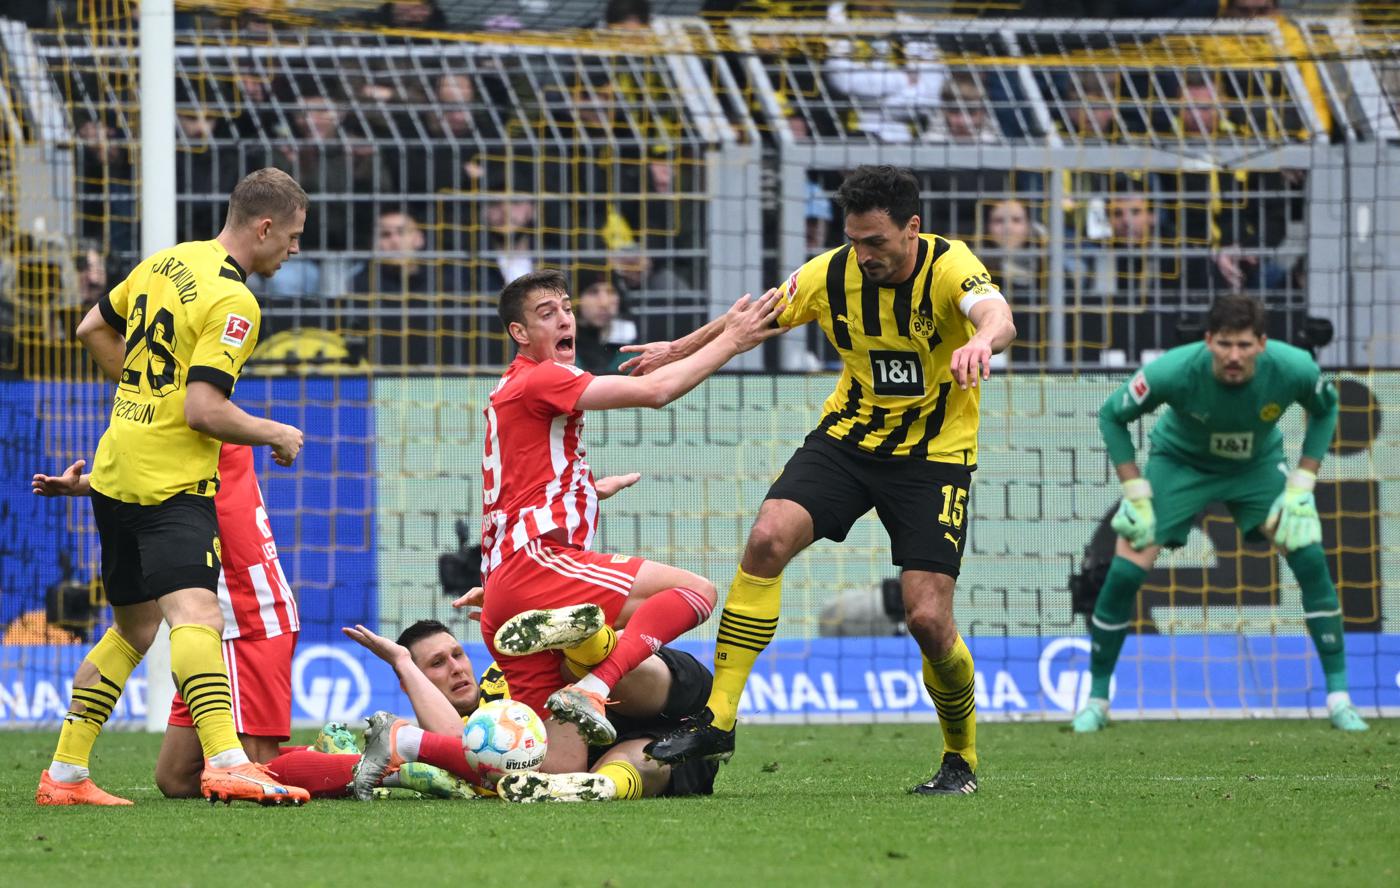 Borussia D gegen Union - 2:1. Deutsche Bundesliga, 27. Runde. Spielbericht, Statistik.